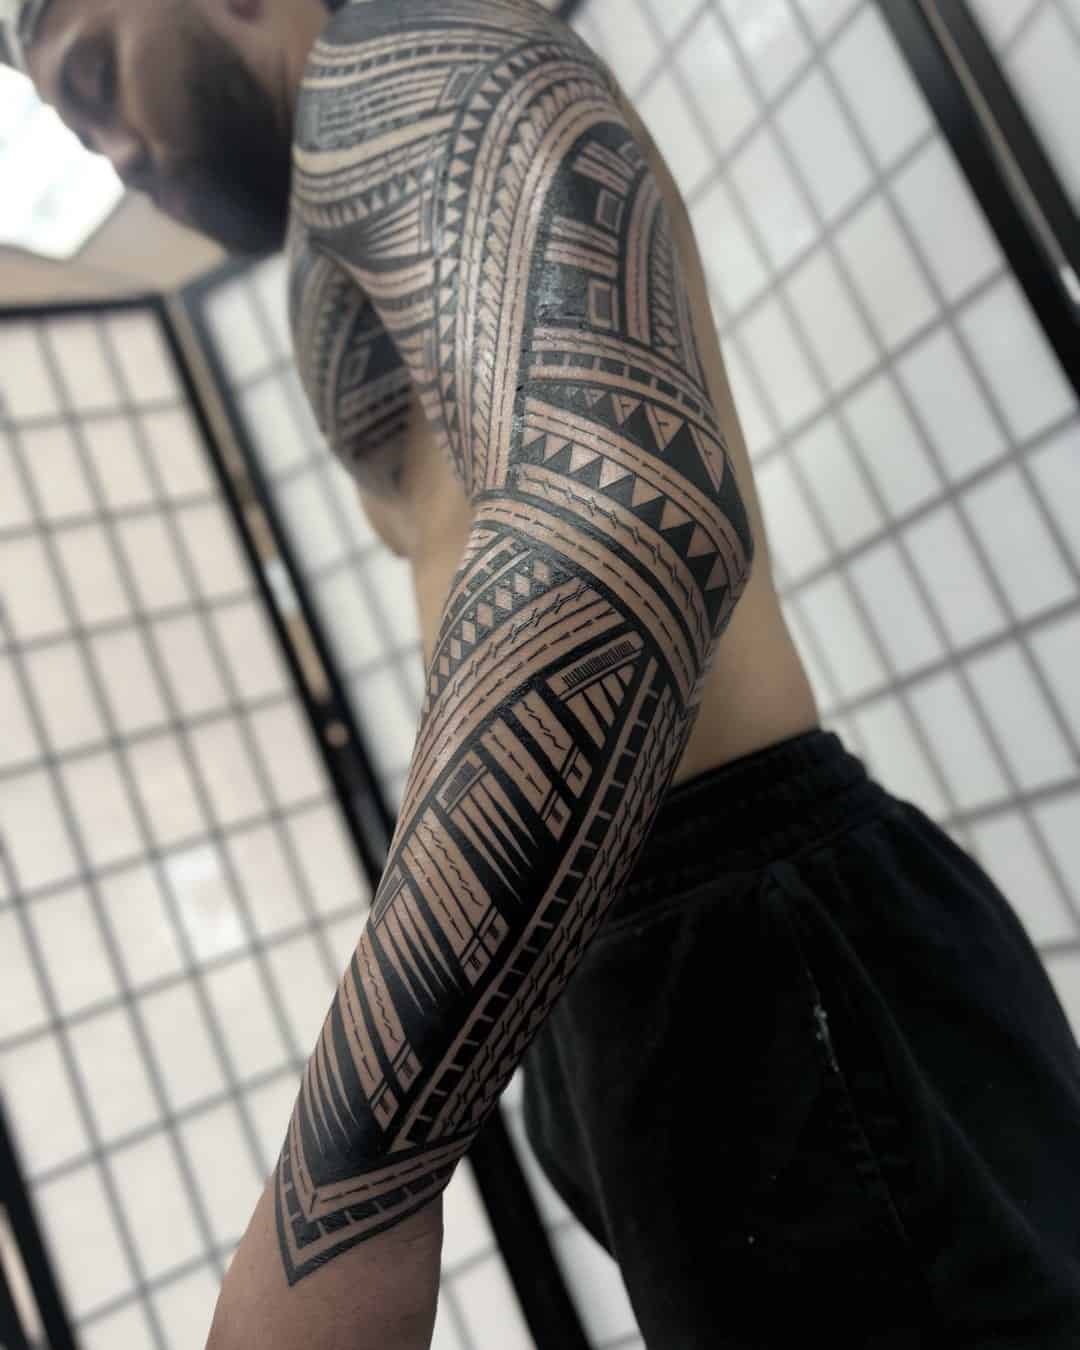 Tribal tattoo by ajtfz.801